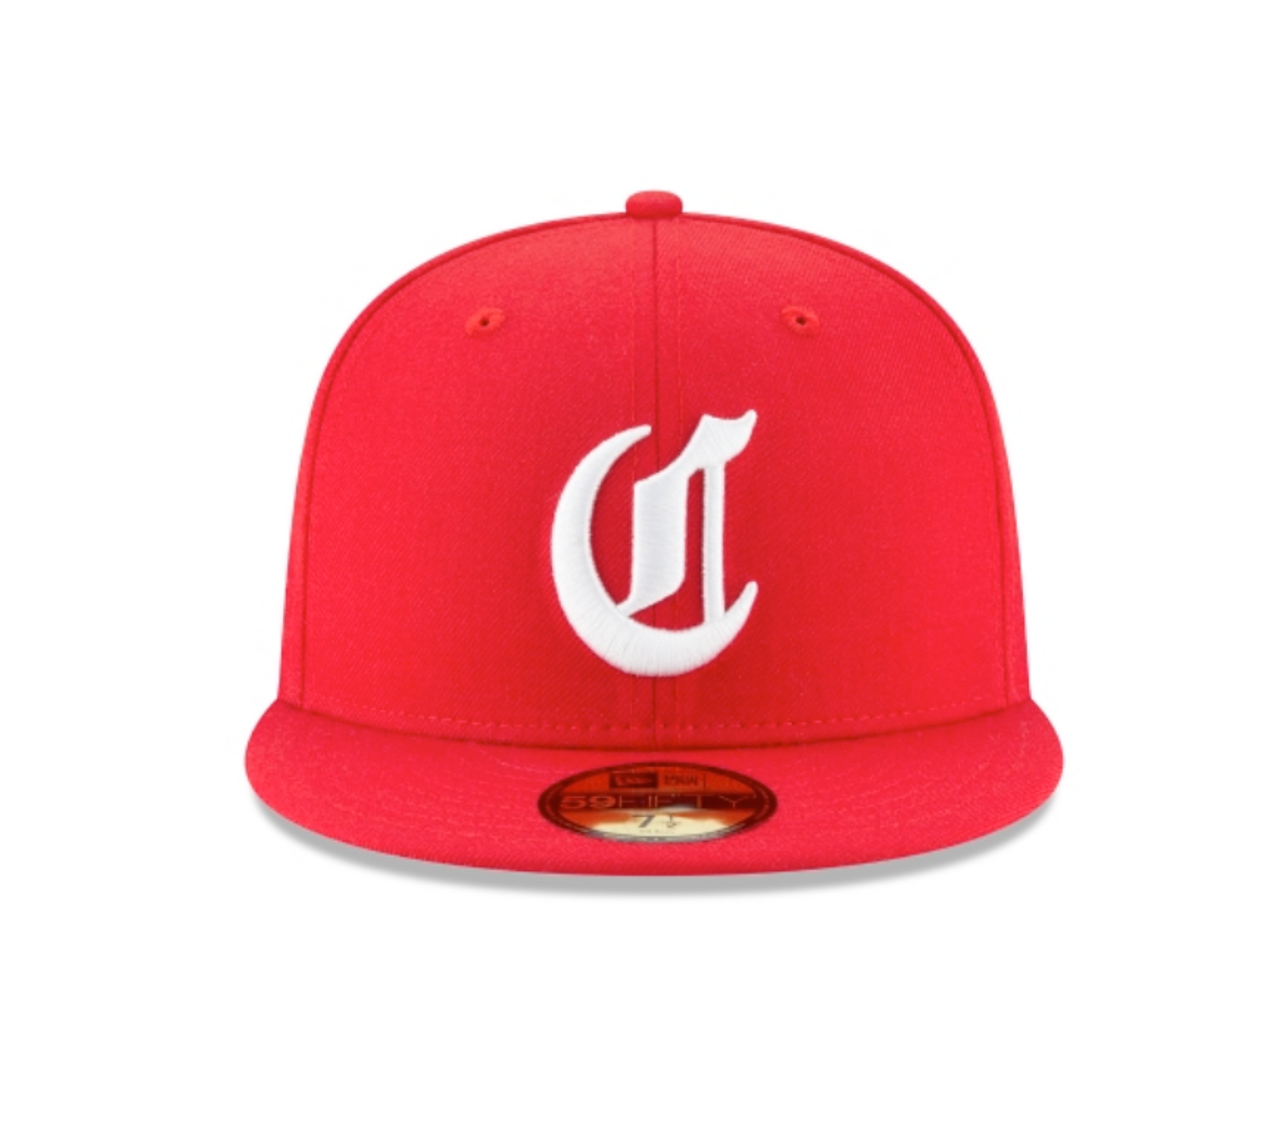 Cincinnati Reds hat red original wool rayon M fitted baseball cap Vintage  60's